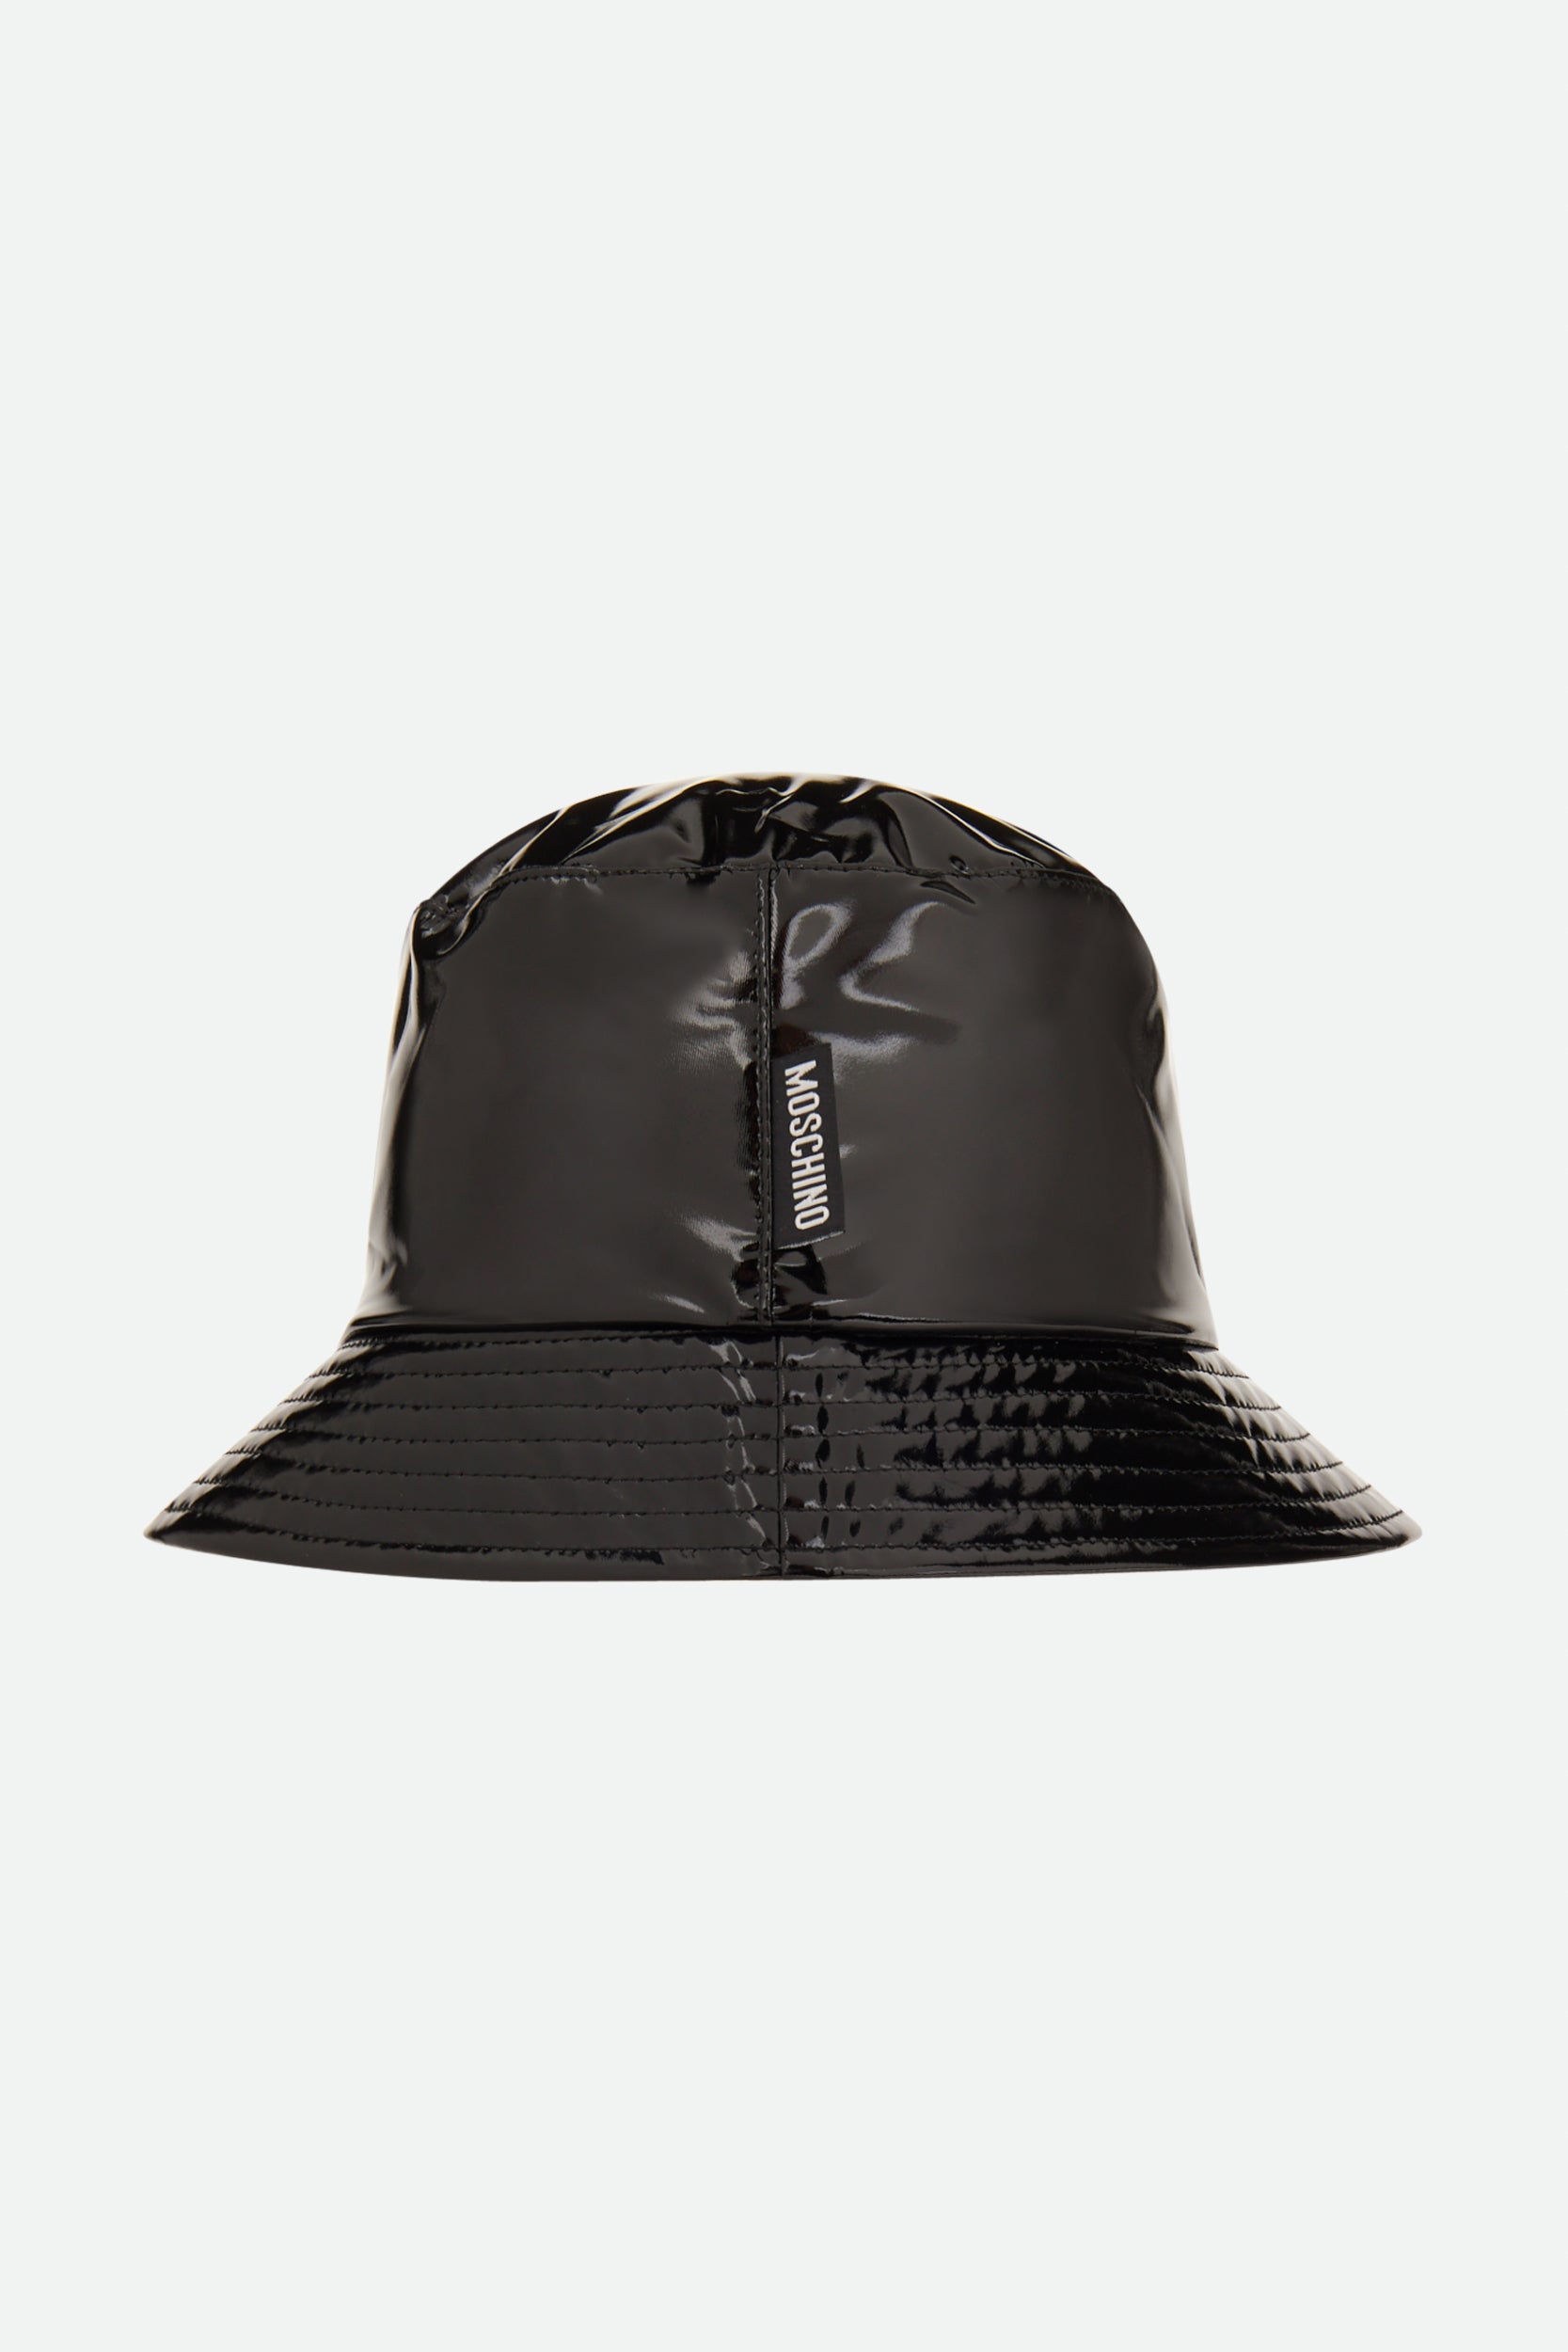 Moschino-Hut aus schwarzem Vinyl